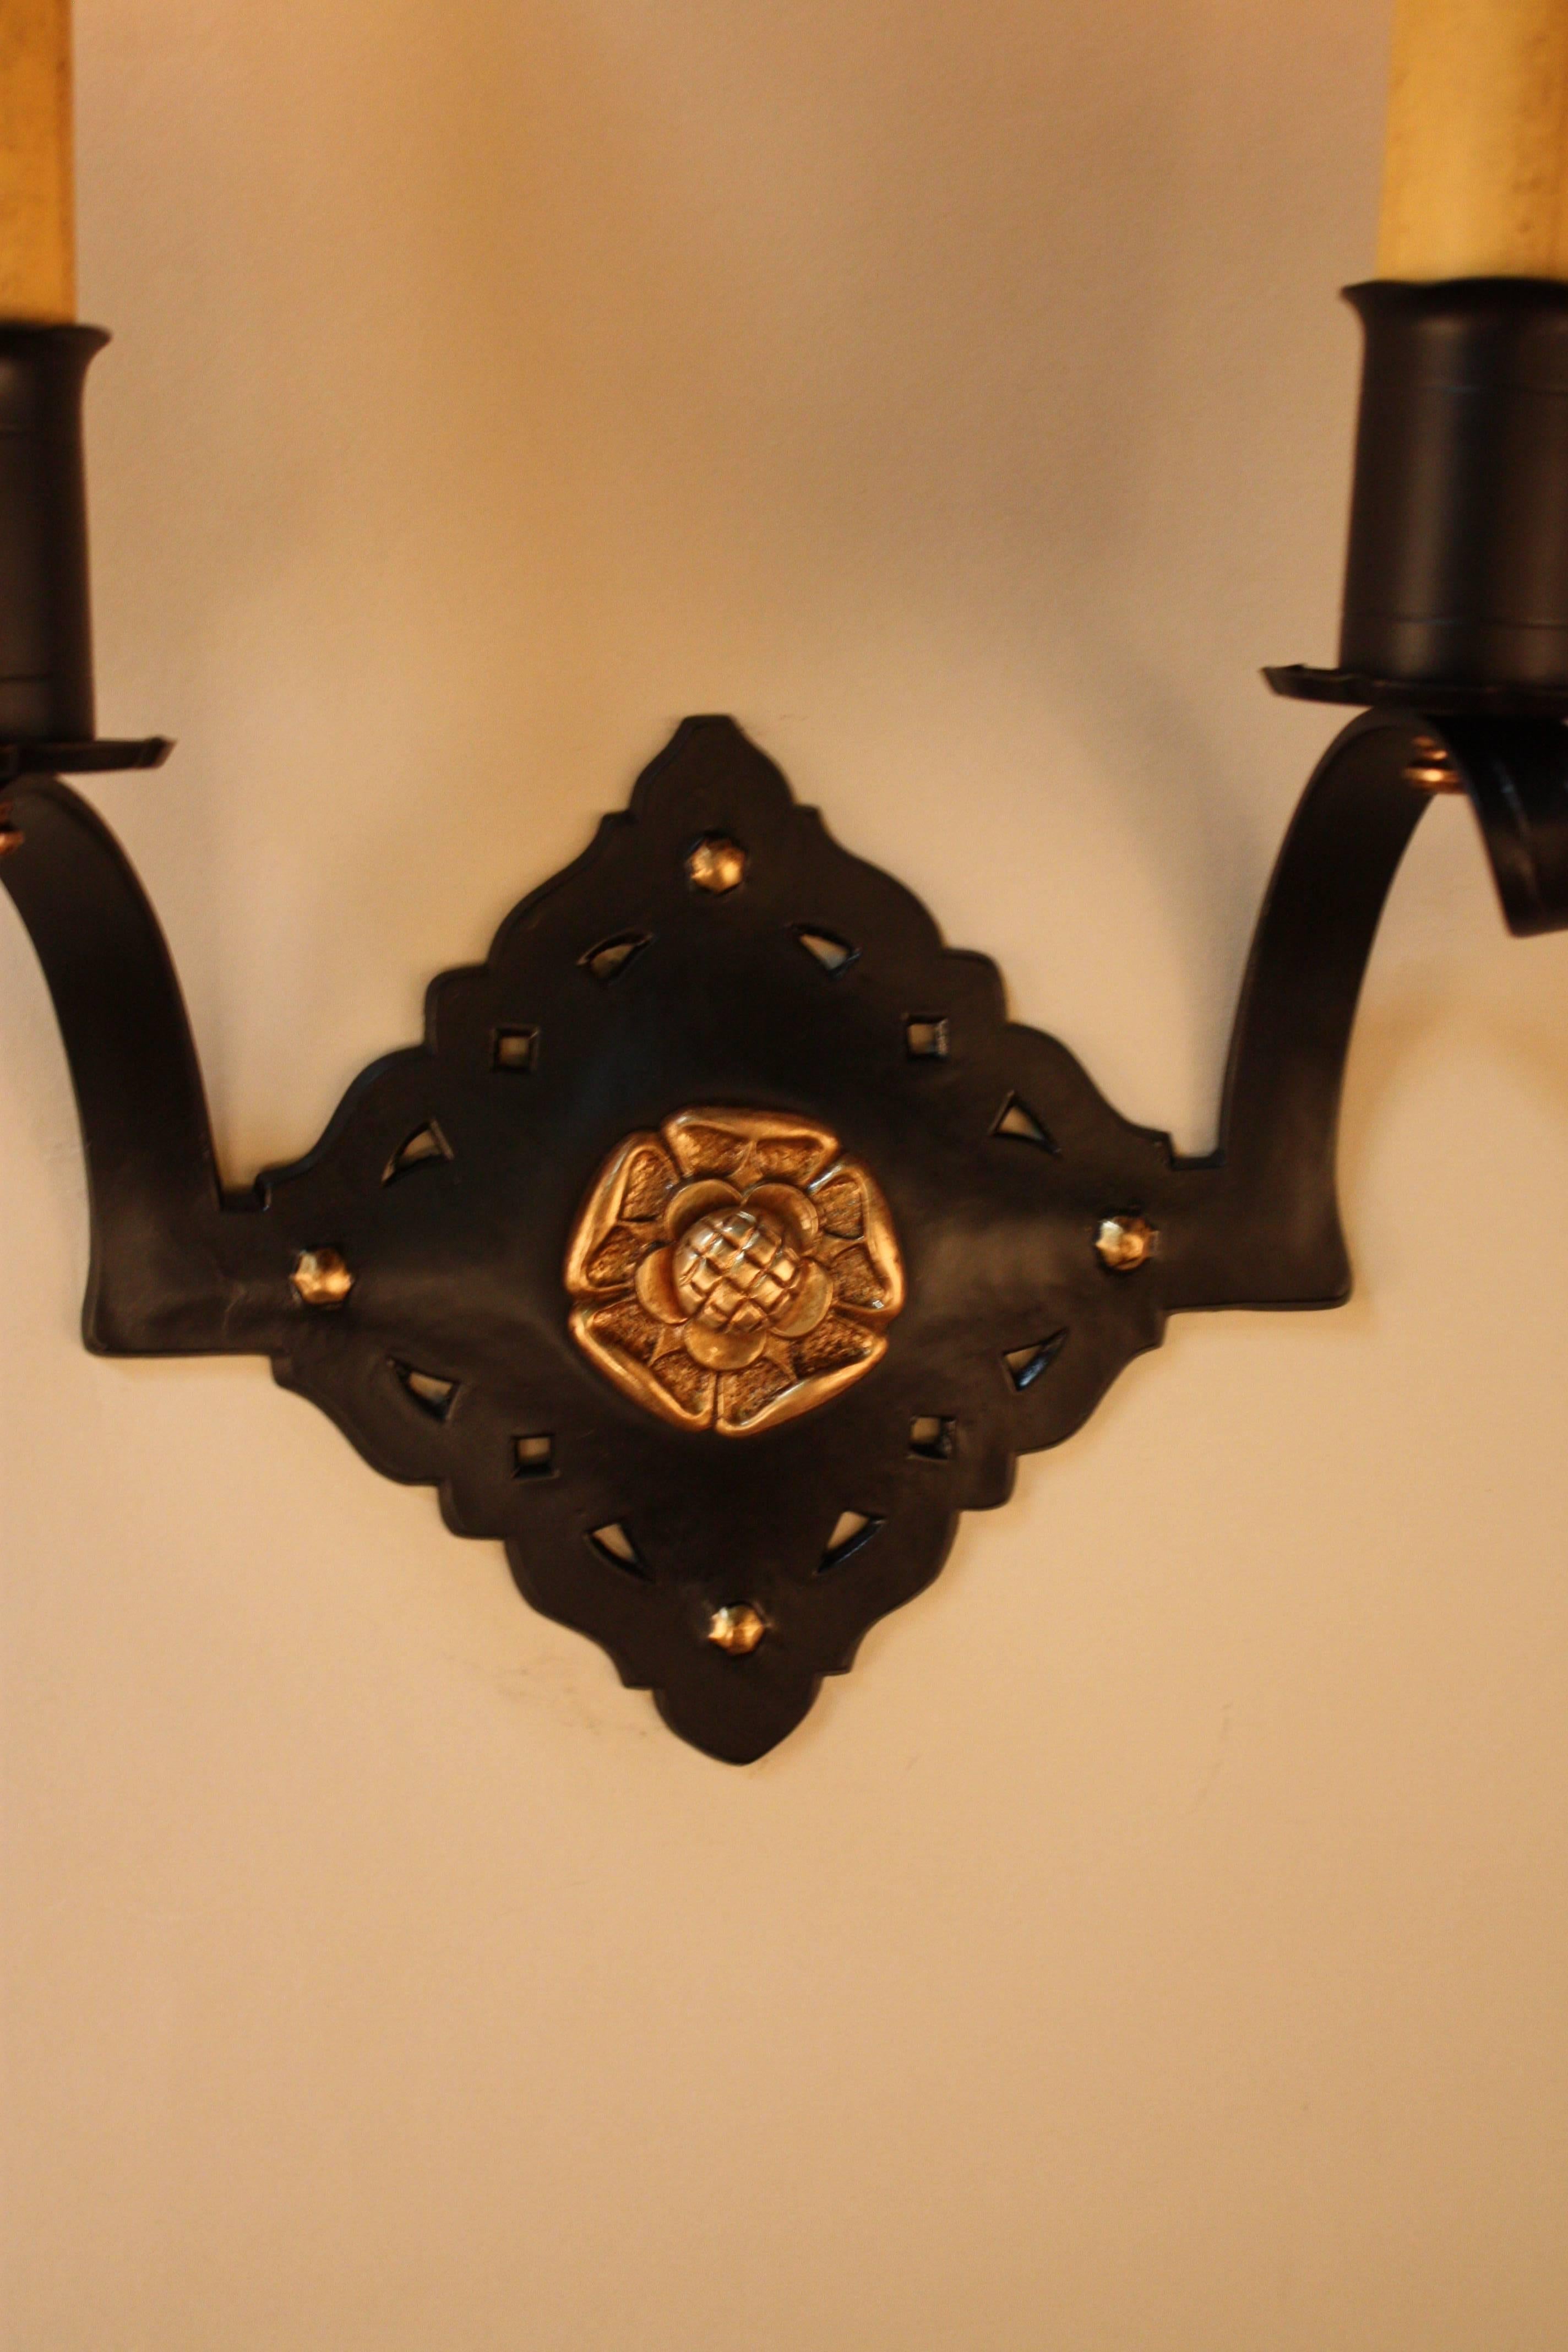 Paar Kombination von handgefertigten und maschinell hergestellten Wandleuchtern.
Schwarzer Lack über Bronze mit goldenem Bronze-Akzent.